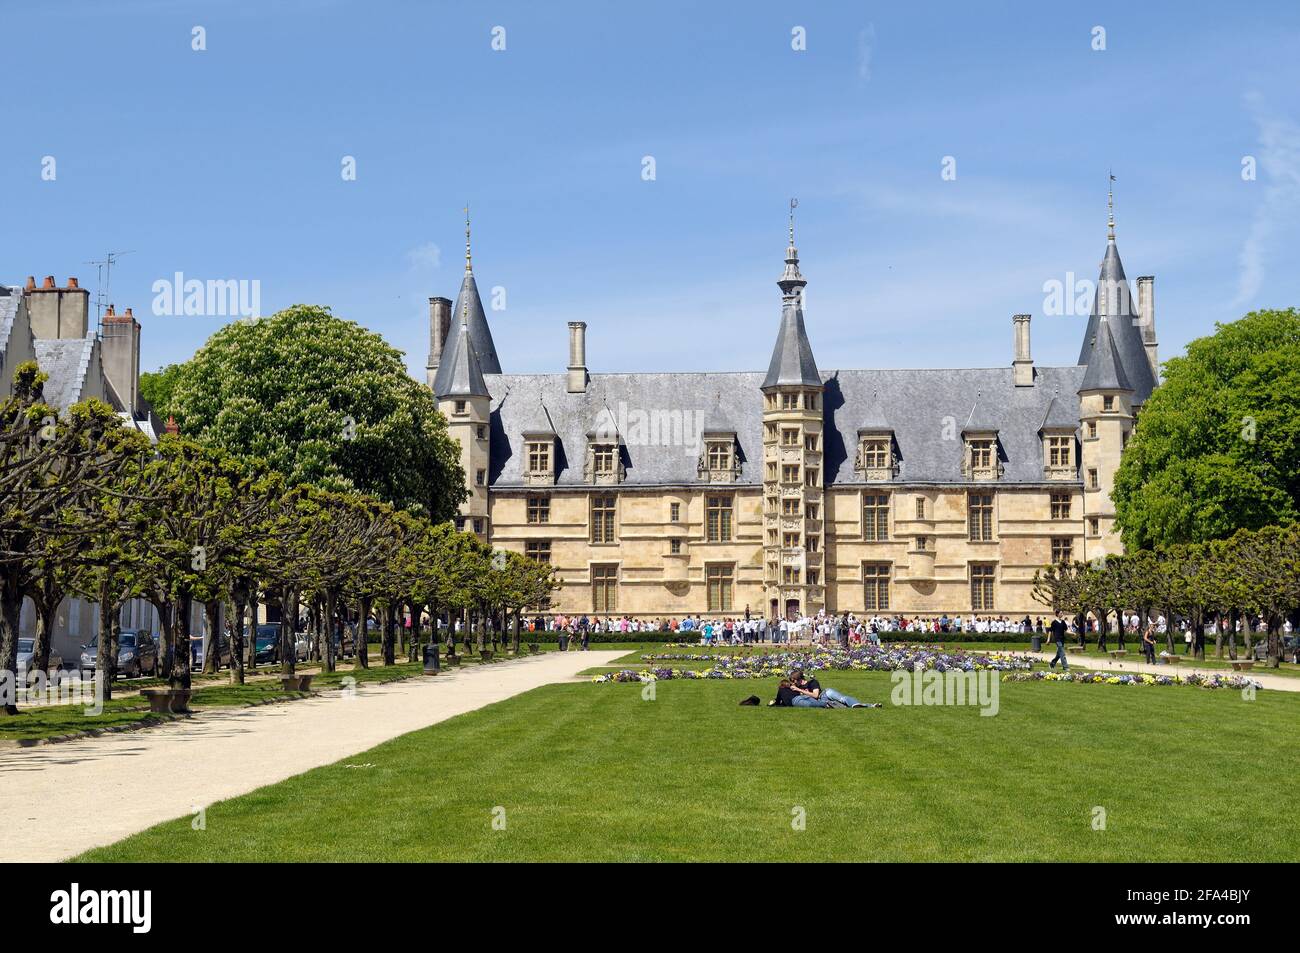 Place de la Republique, Palais Ducal, Nevers, Burgundy, France Stock Photo